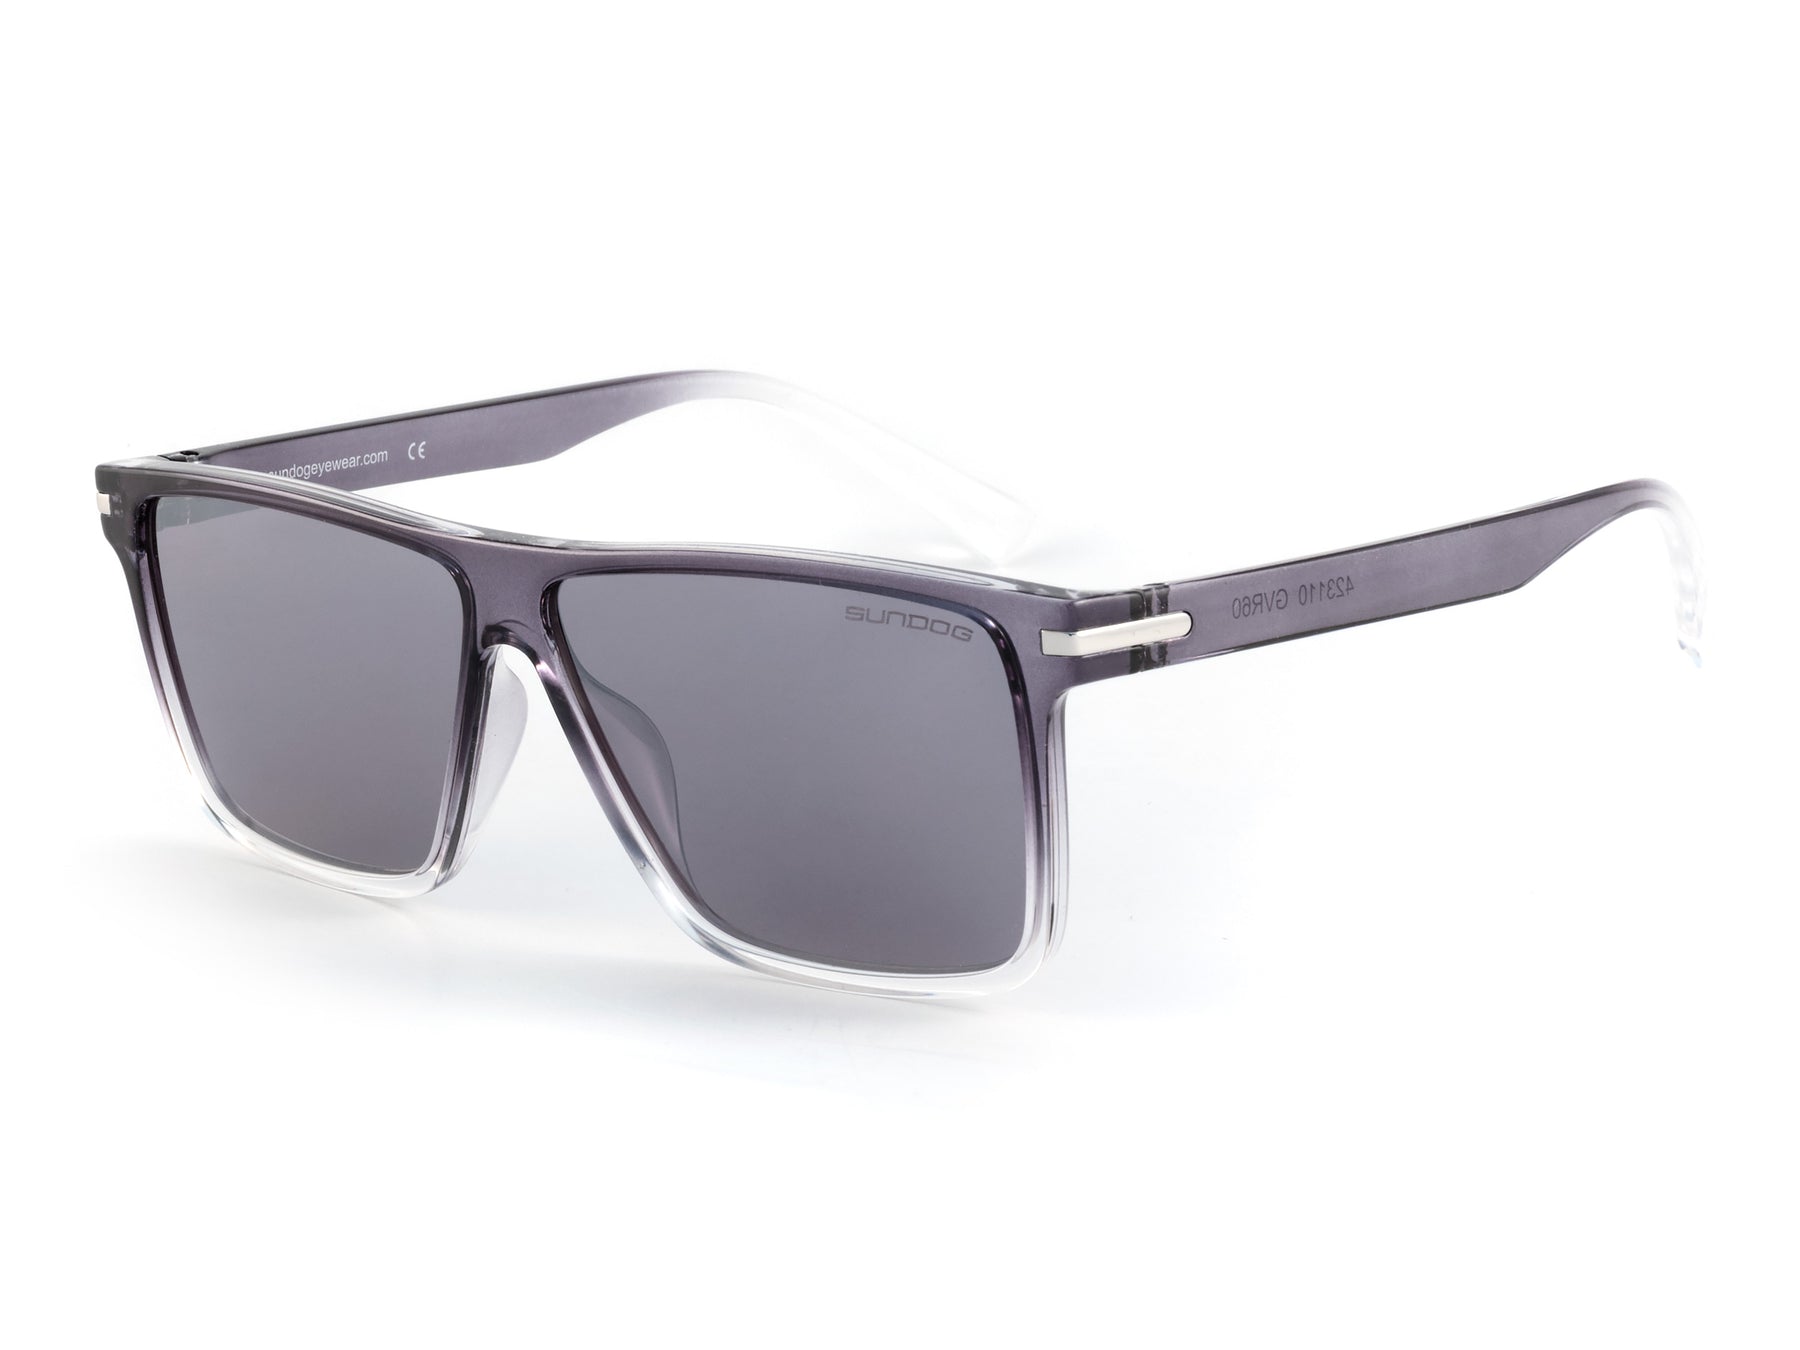 Sundog Gvr60 Sunglasses - Crystal Grey - Clear Fade / Smoke - Lt. Silver Mirror